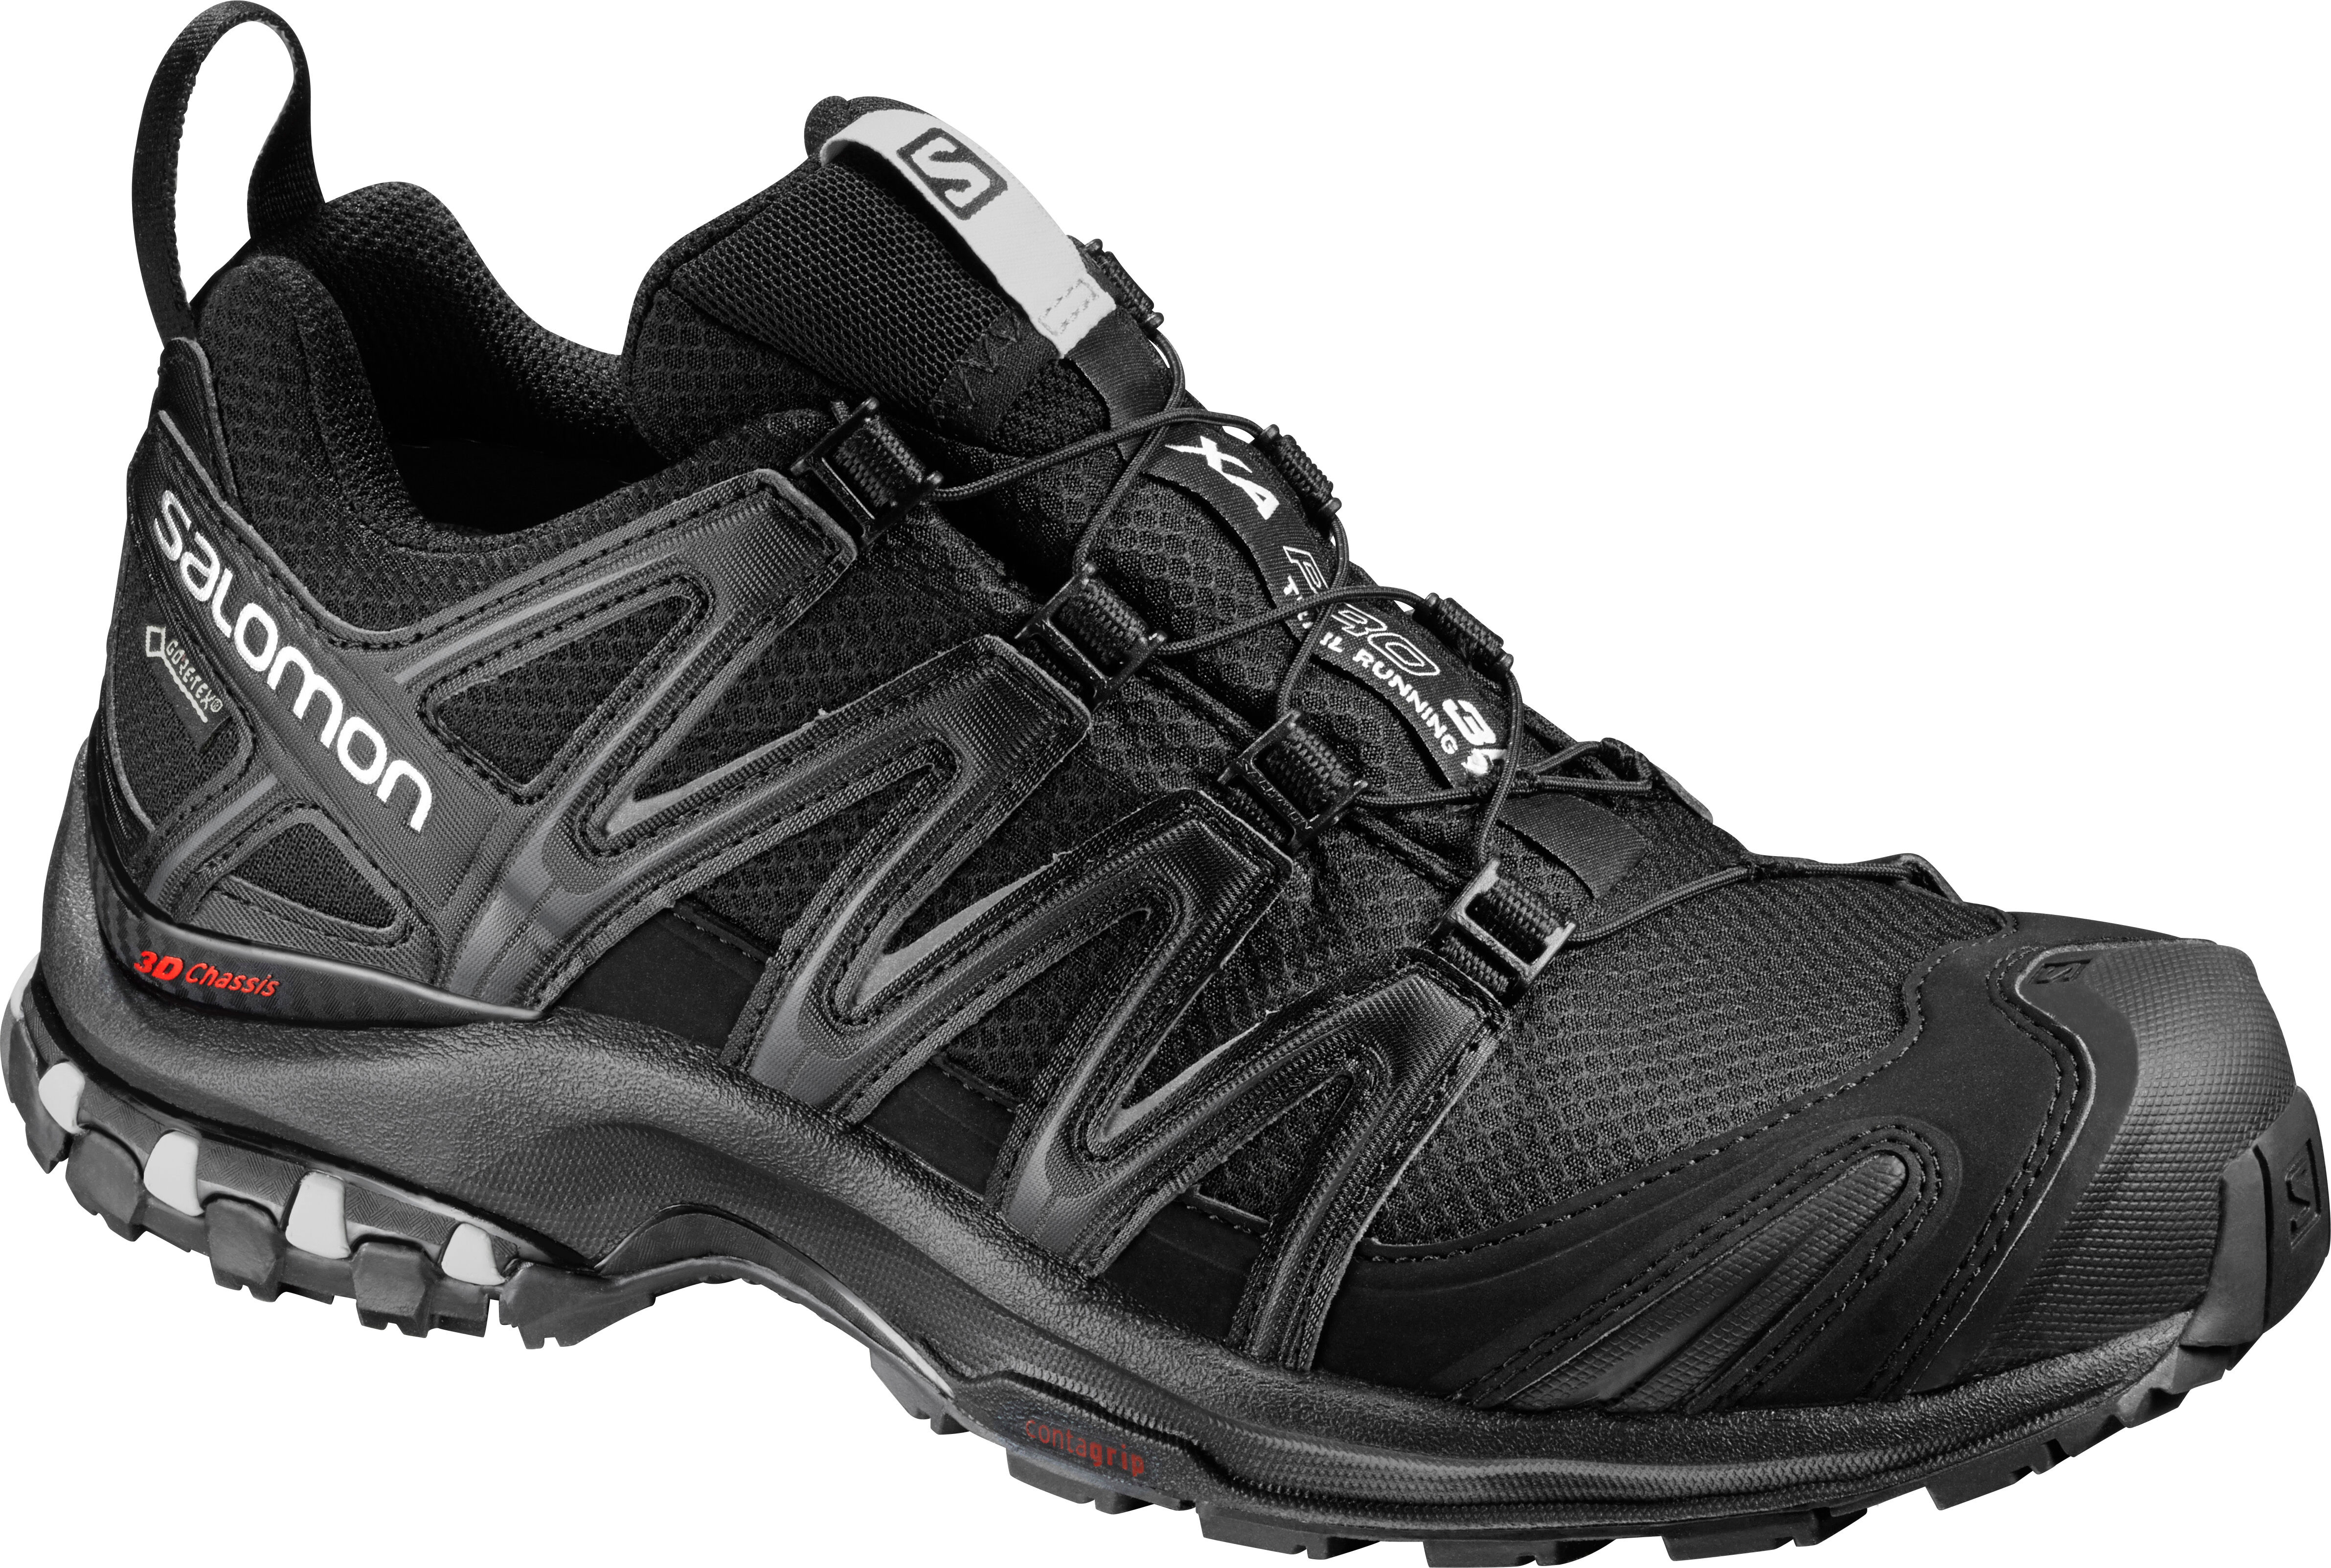 Salomon - XA Pro 3D GTX® W - Walking Boots - Women's